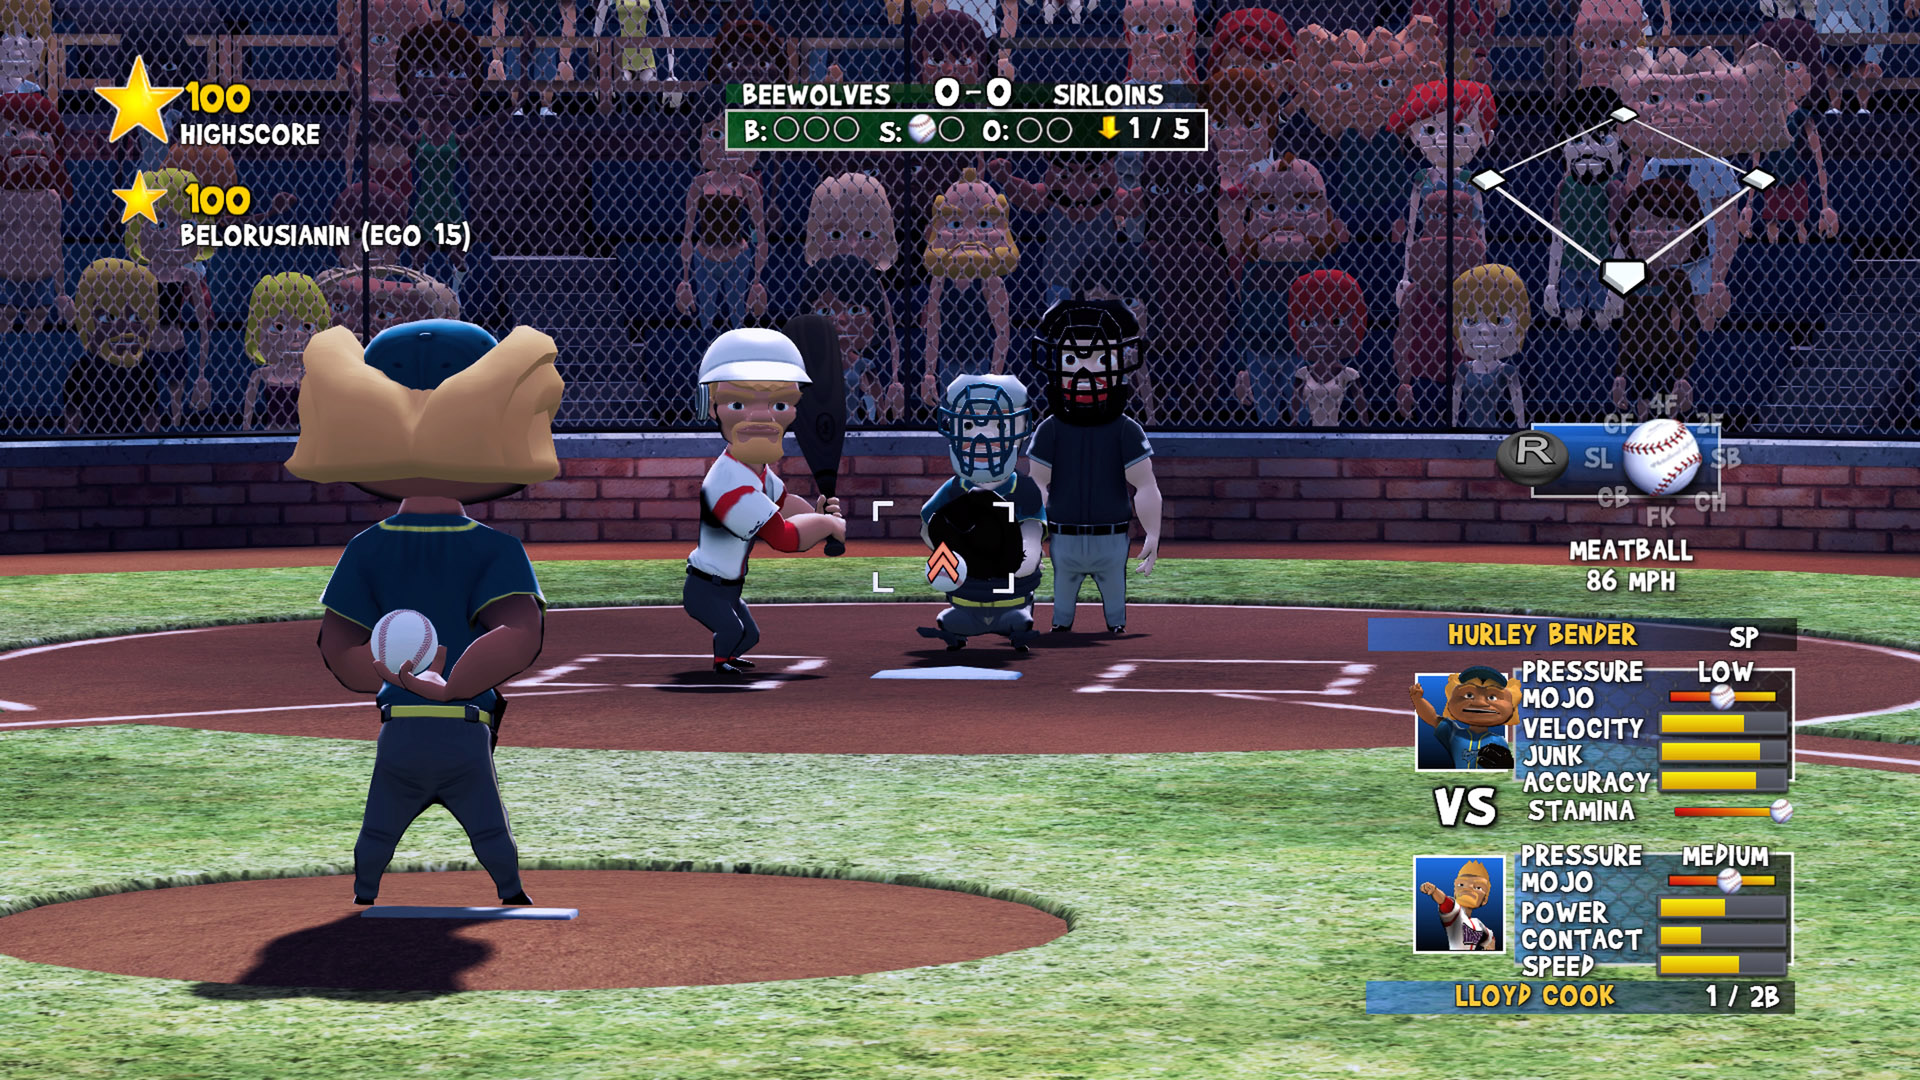 Скриншот *Super Mega Baseball [PS4] 5.05 / 6.72 / 7.02 [USA] (2014) [Английский] (v1.03)*